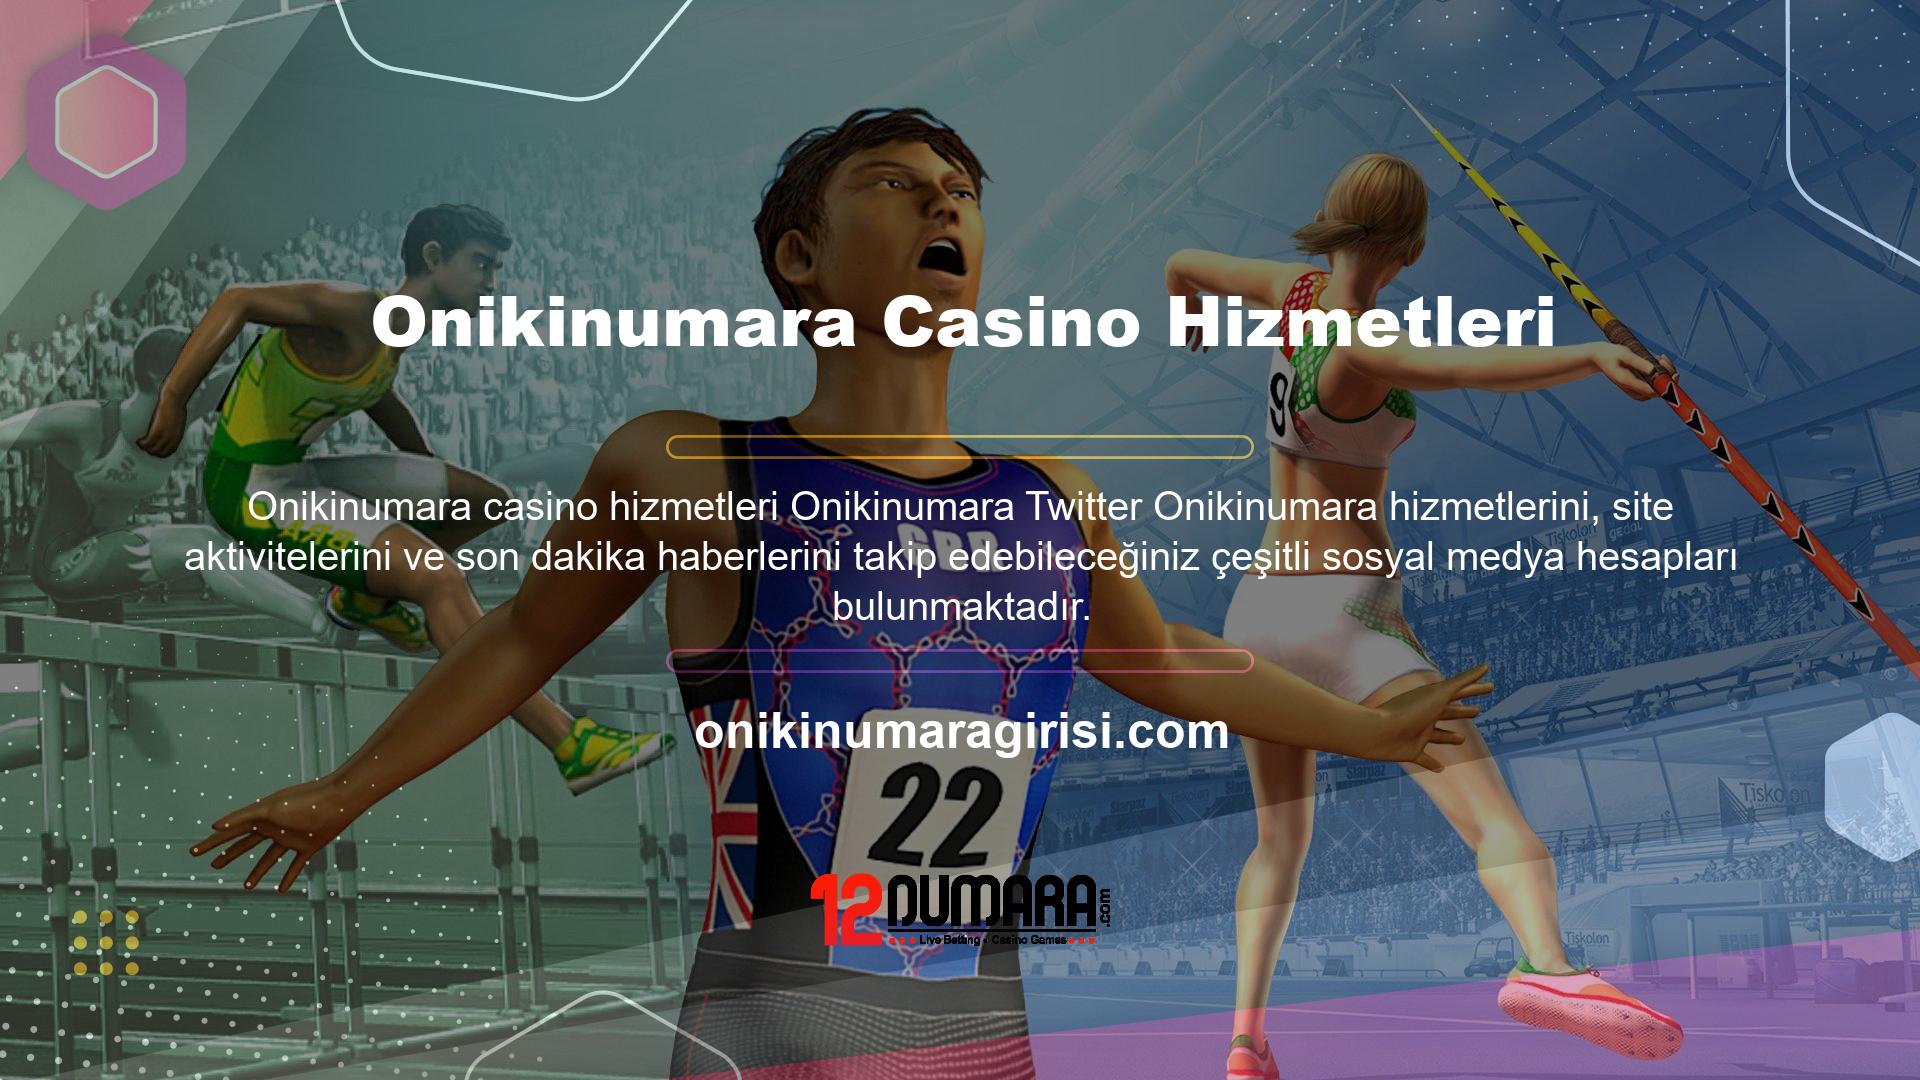 Bu sitenin kendine ait resmi sosyal medya hesapları bulunmakta olup bunlardan biri de Onikinumara Twitter hesabıdır